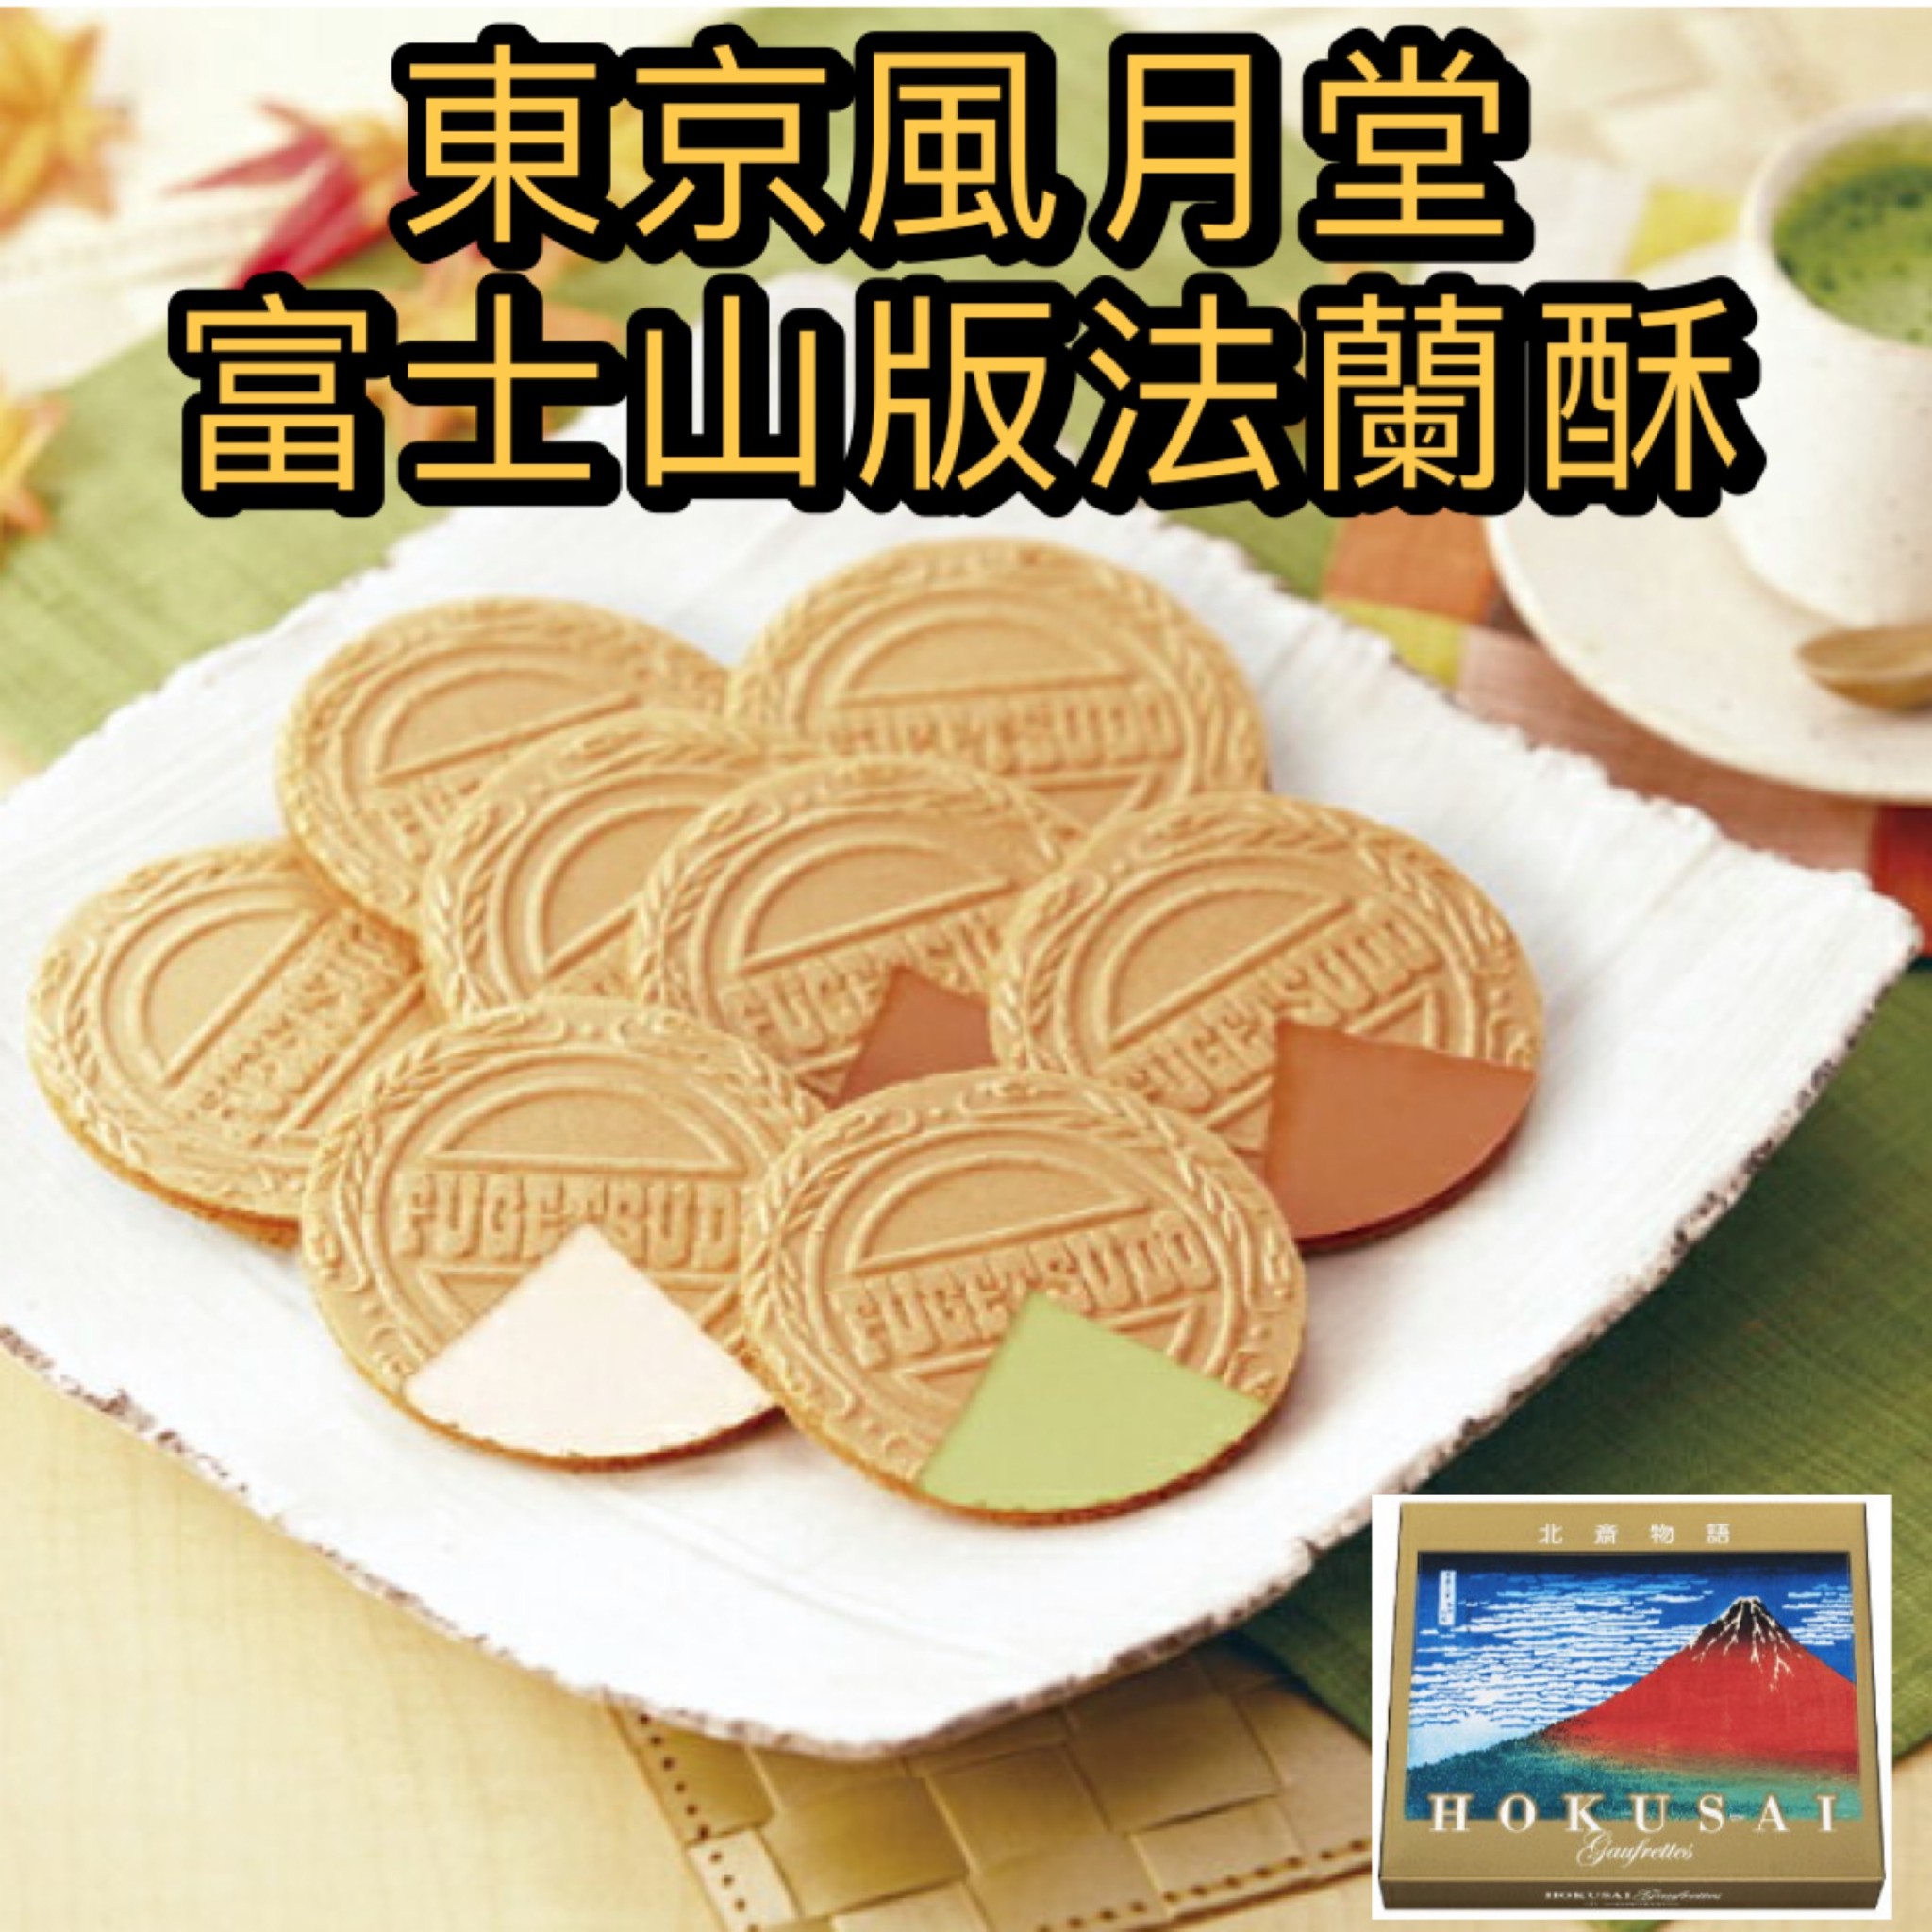 【預購】東京風月堂 法蘭酥 富士山限定版 日本伴手禮 甜點 送禮